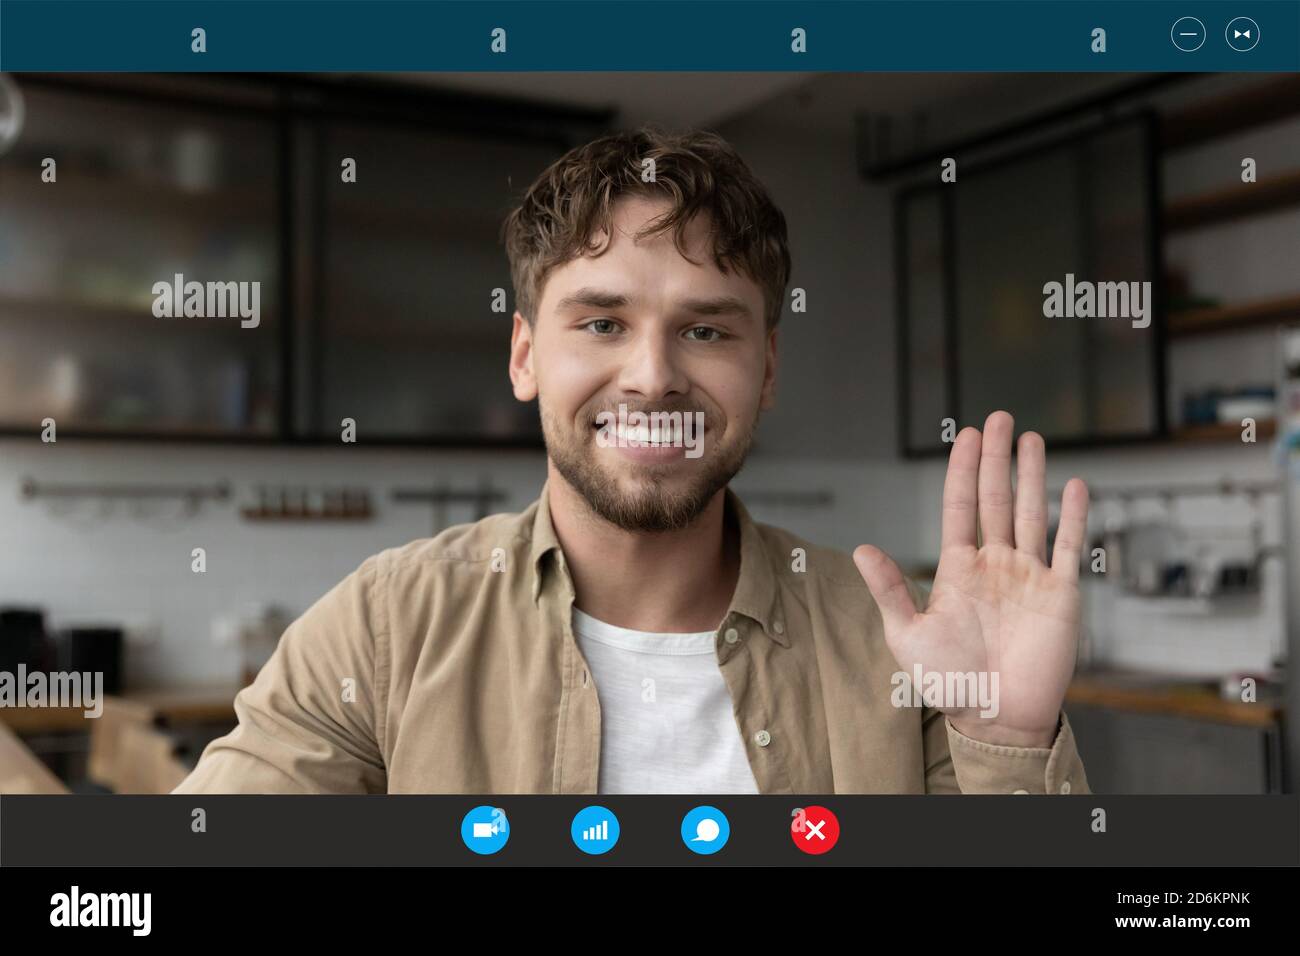 Kopfaufnahme Porträt Bildschirm Ansicht lächelnder Mann winkende Hand Stockfoto